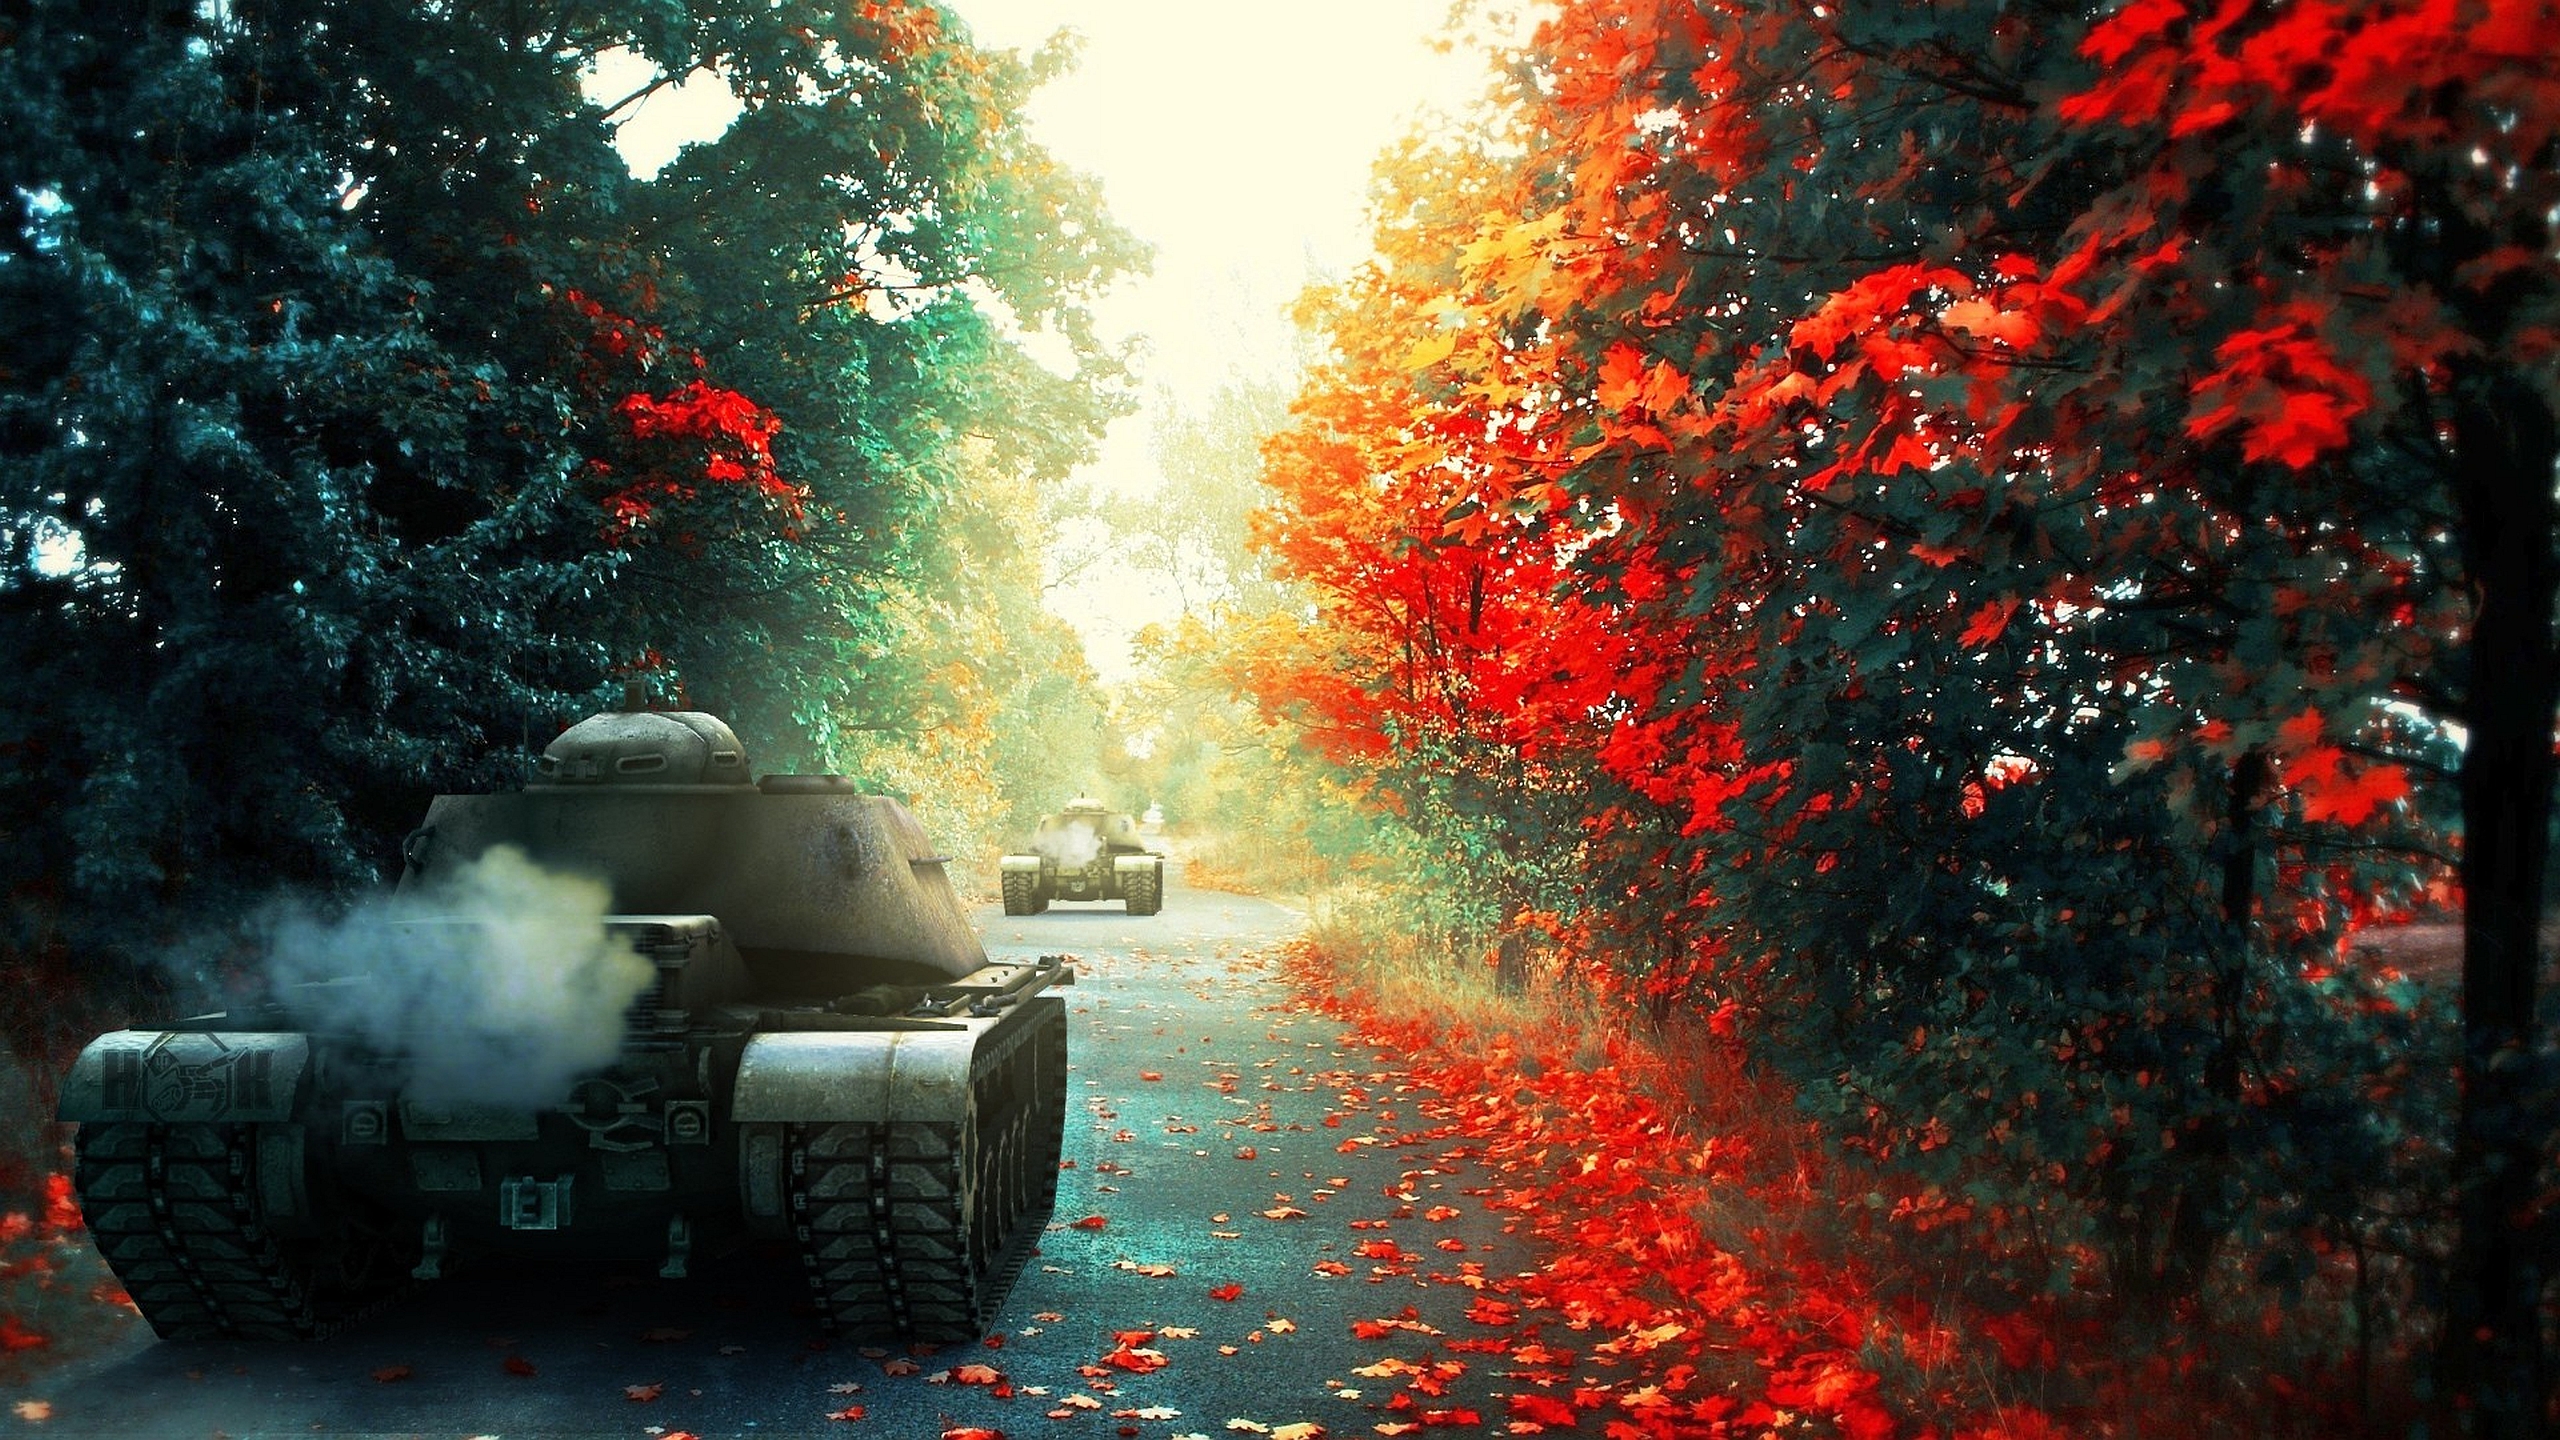 world of tanks, video game, tank Aesthetic wallpaper